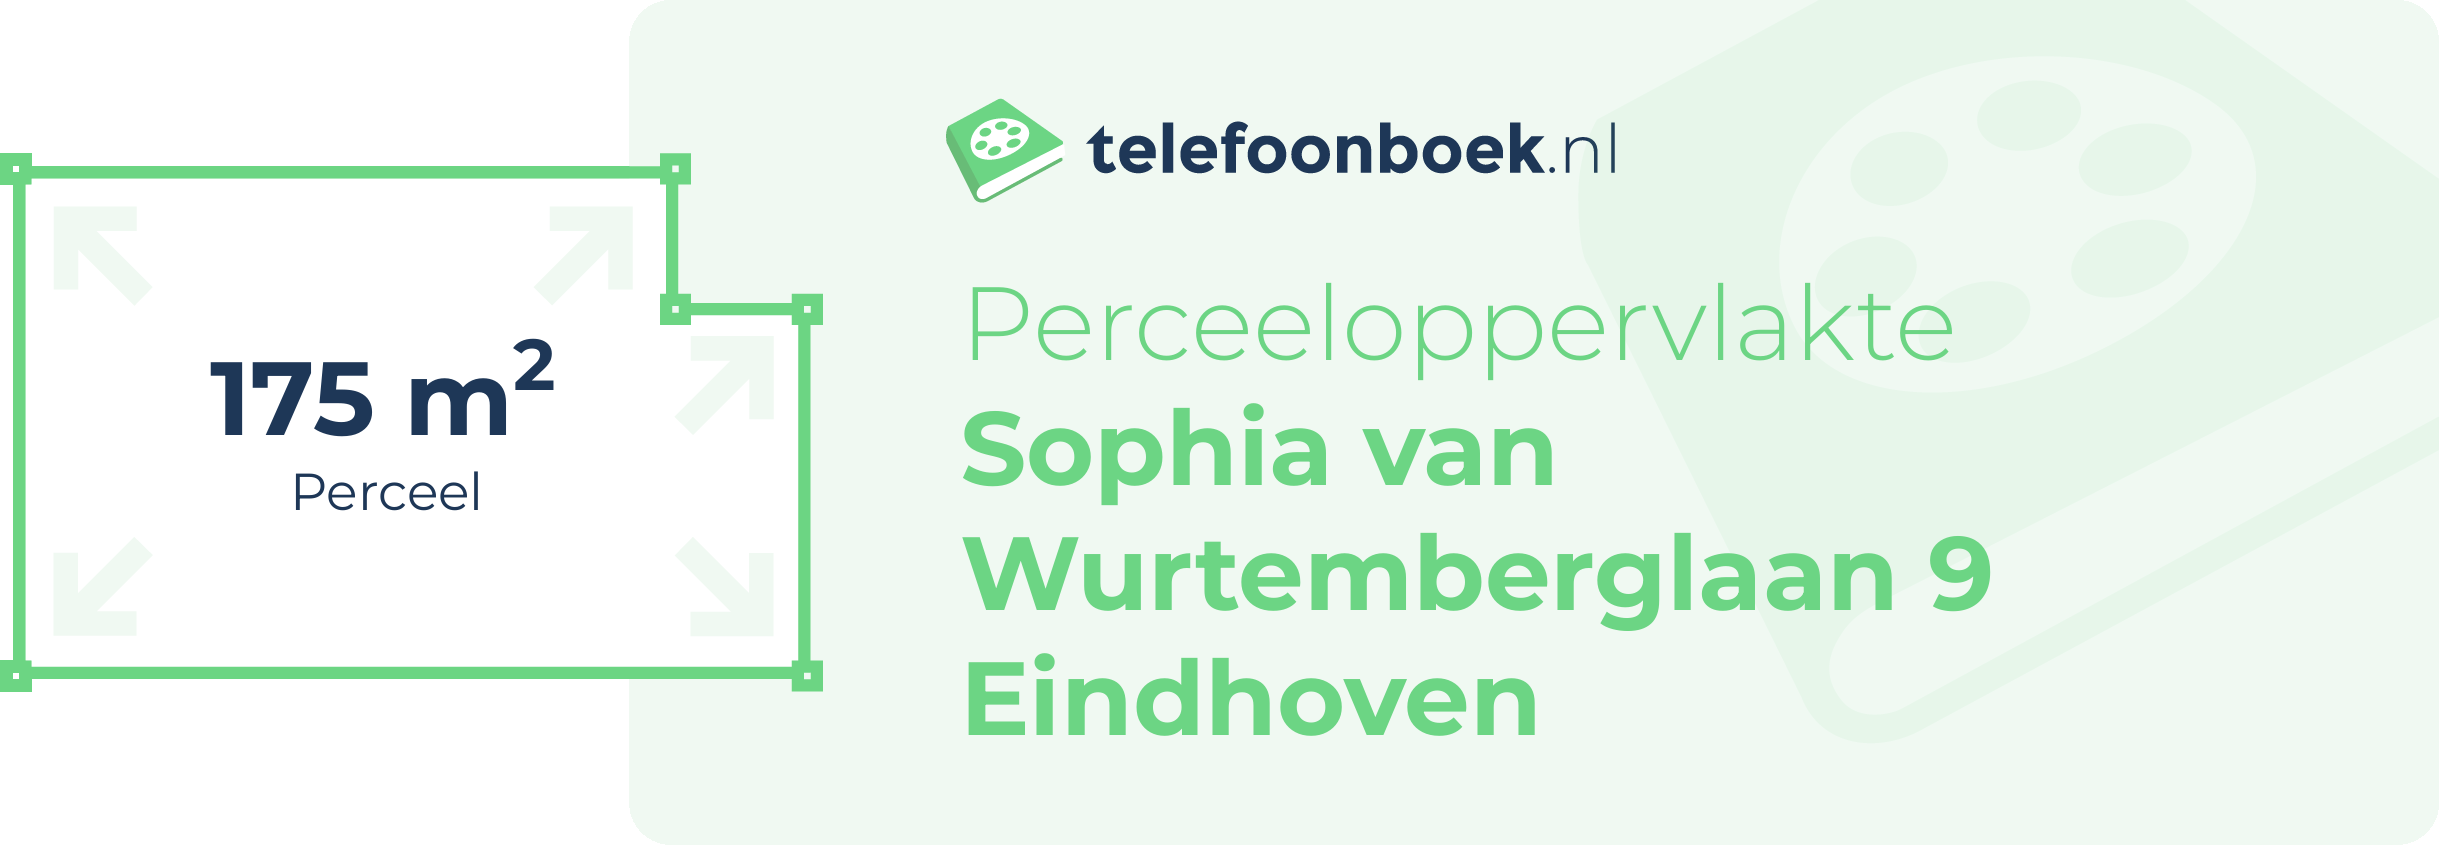 Perceeloppervlakte Sophia Van Wurtemberglaan 9 Eindhoven